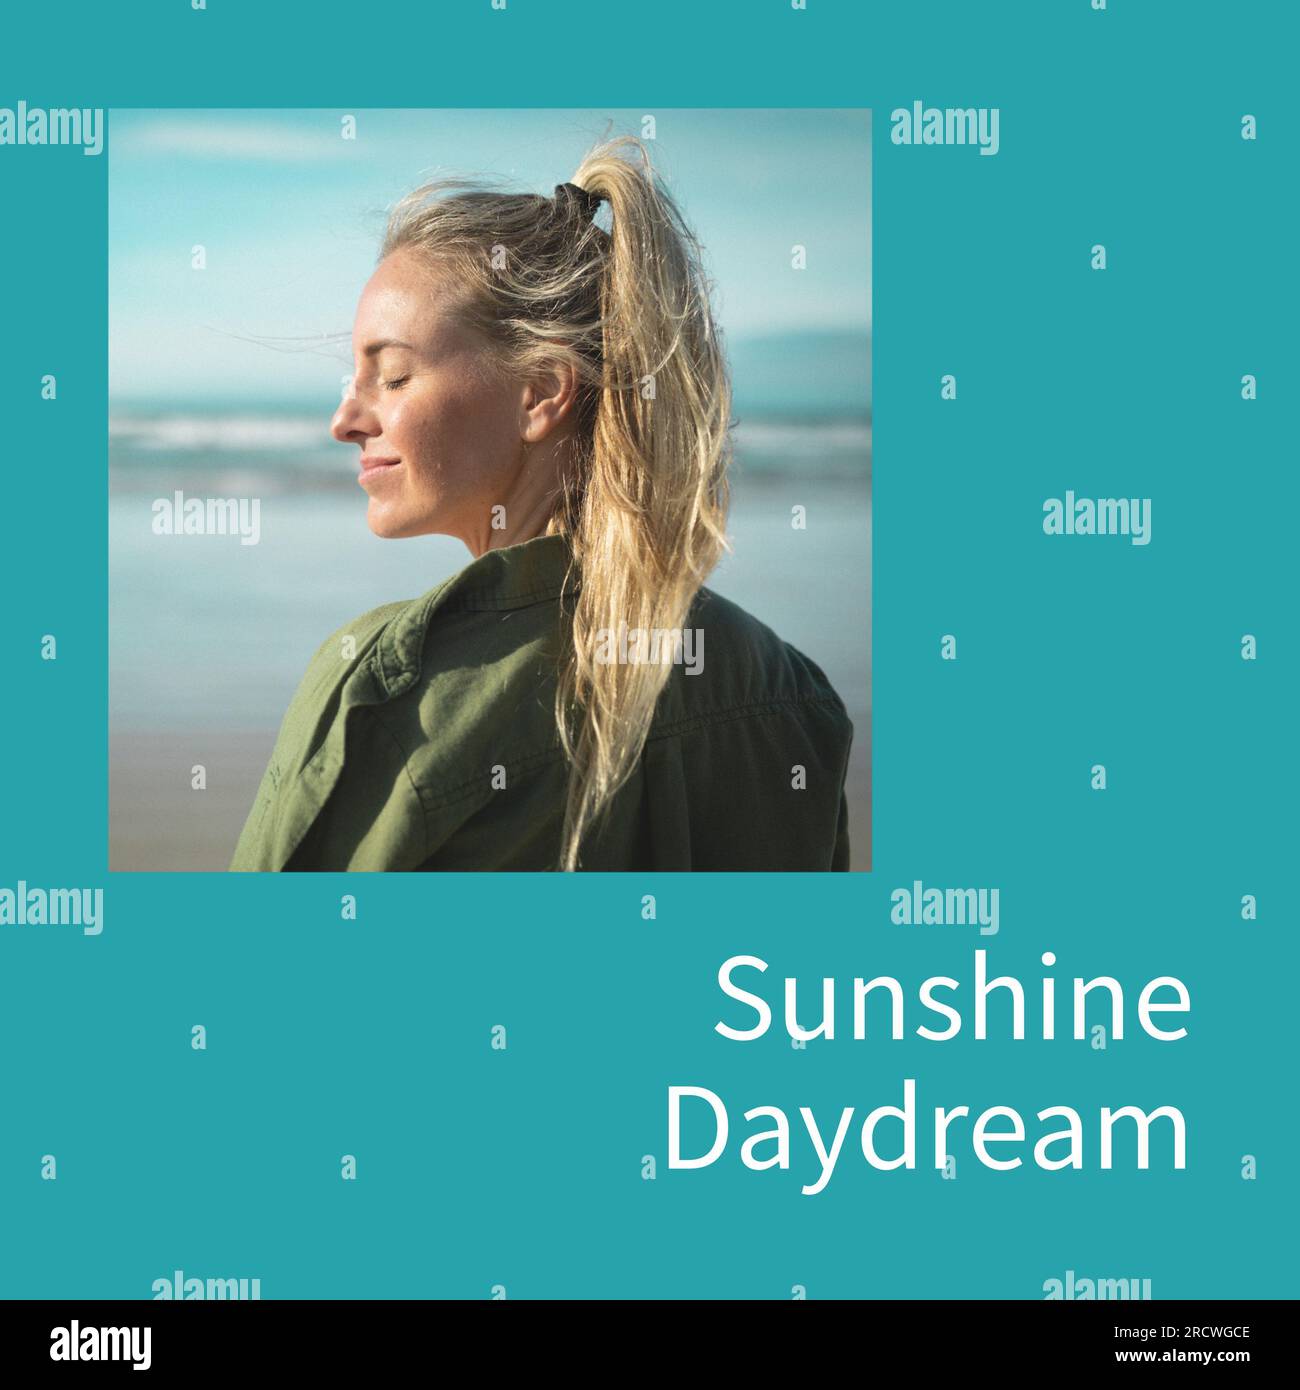 Sunshine Daydream texte sur bleu avec femme caucasienne heureuse souriant au soleil avec les yeux fermés par la mer Banque D'Images